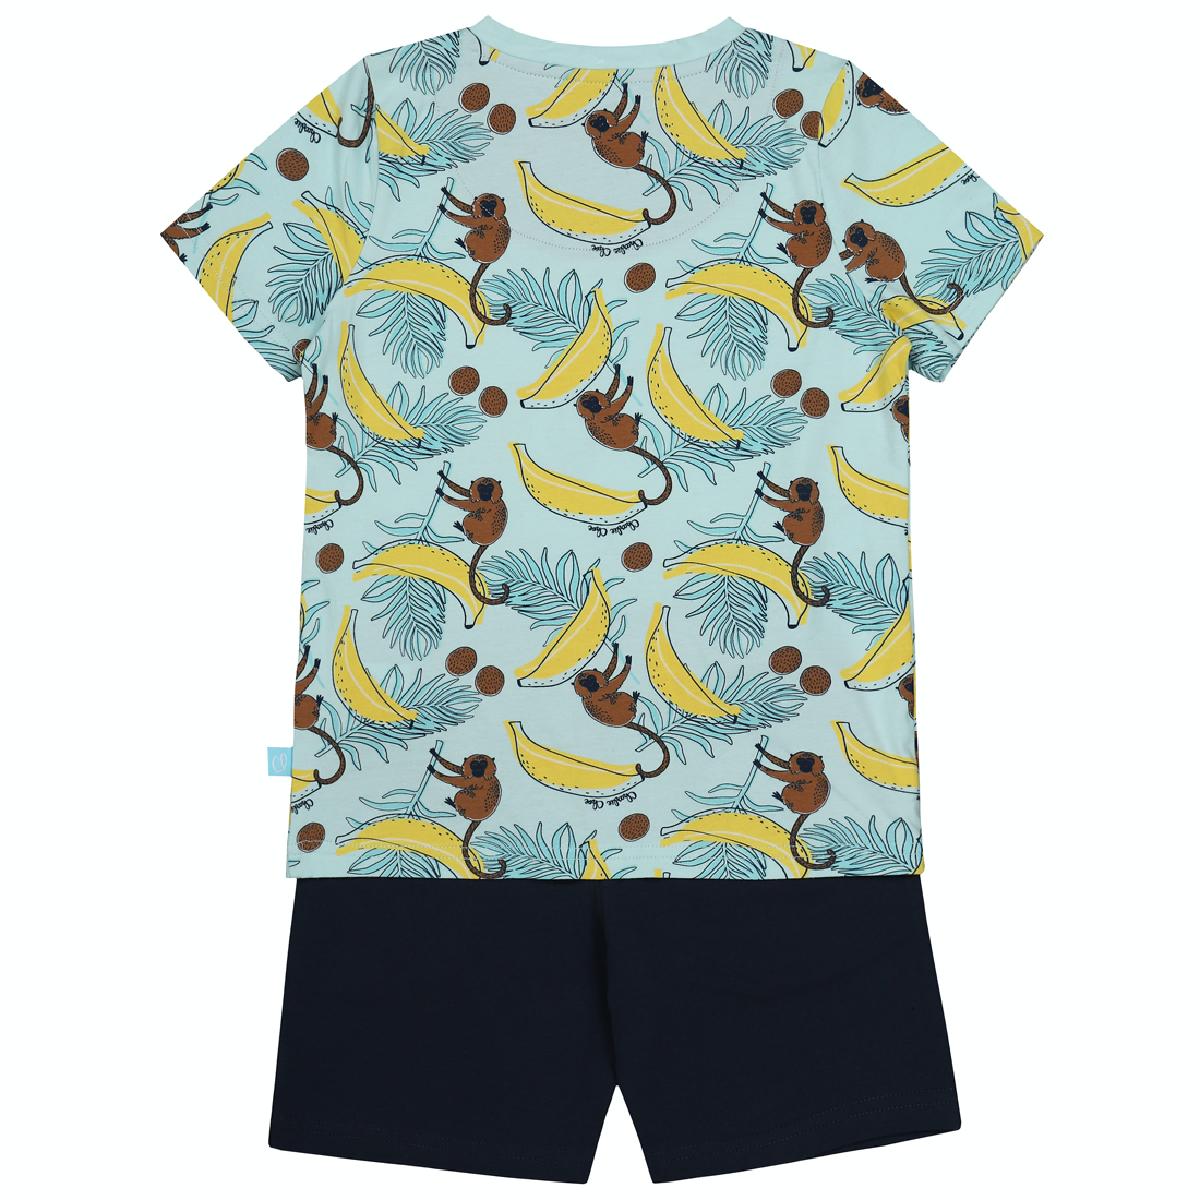 Jongens Boys shorts set van Charlie Choe in de kleur Aop aqua blue + navy in maat 146/152.